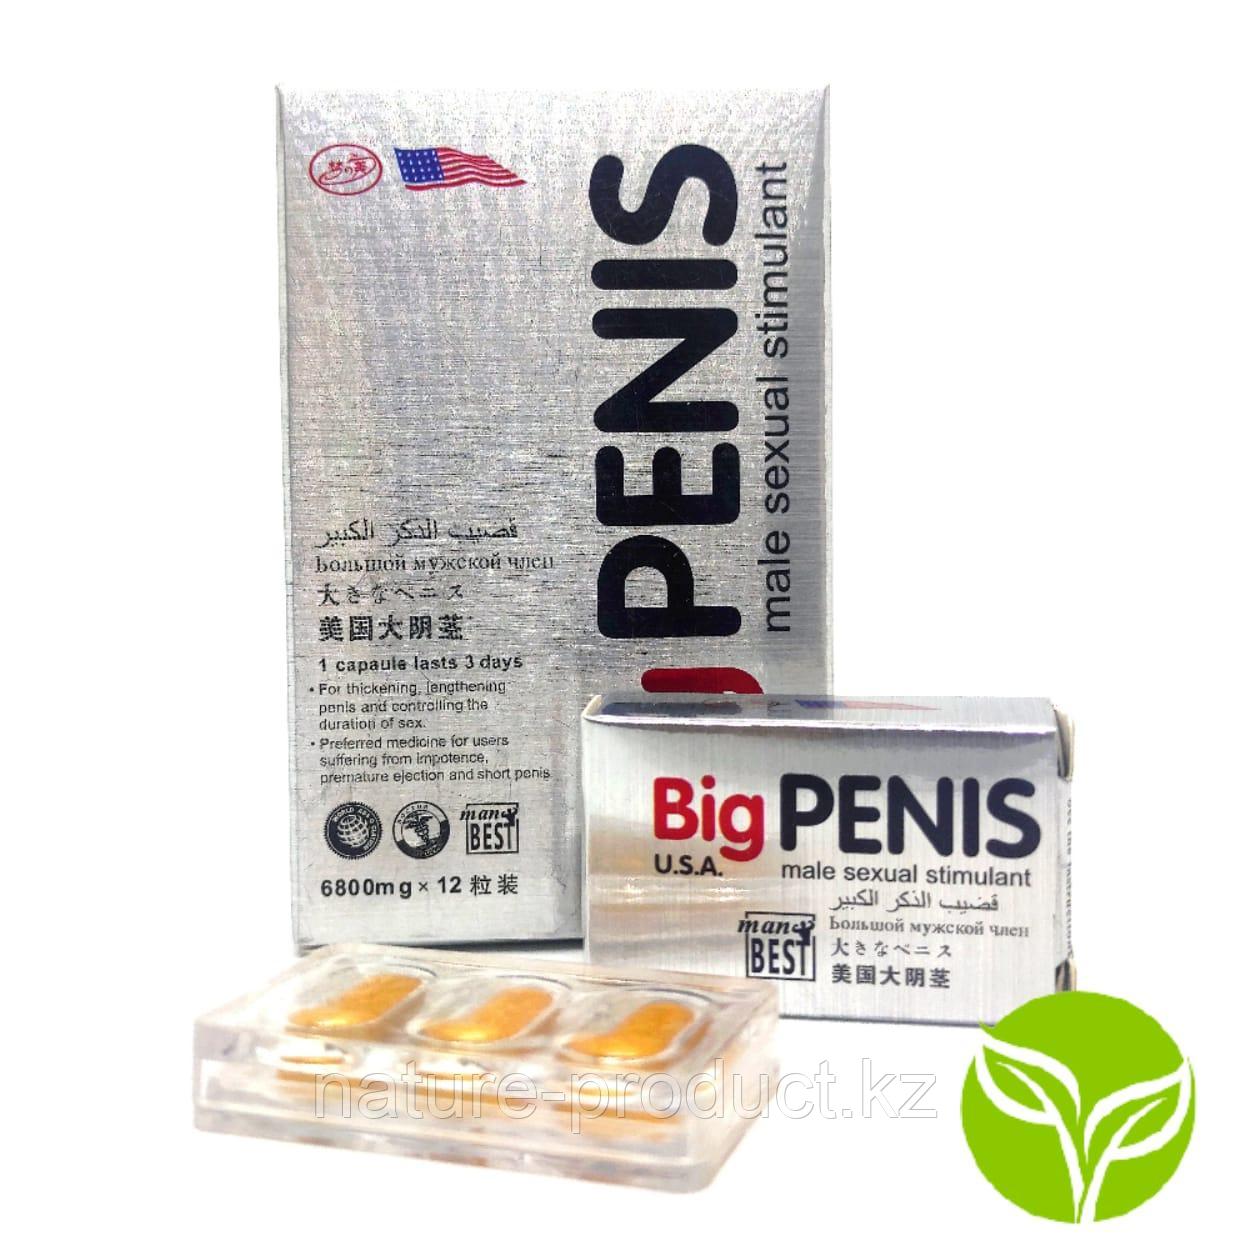 Препарат для повышения потенции виагра Big Penis Большой пенис 12 шт